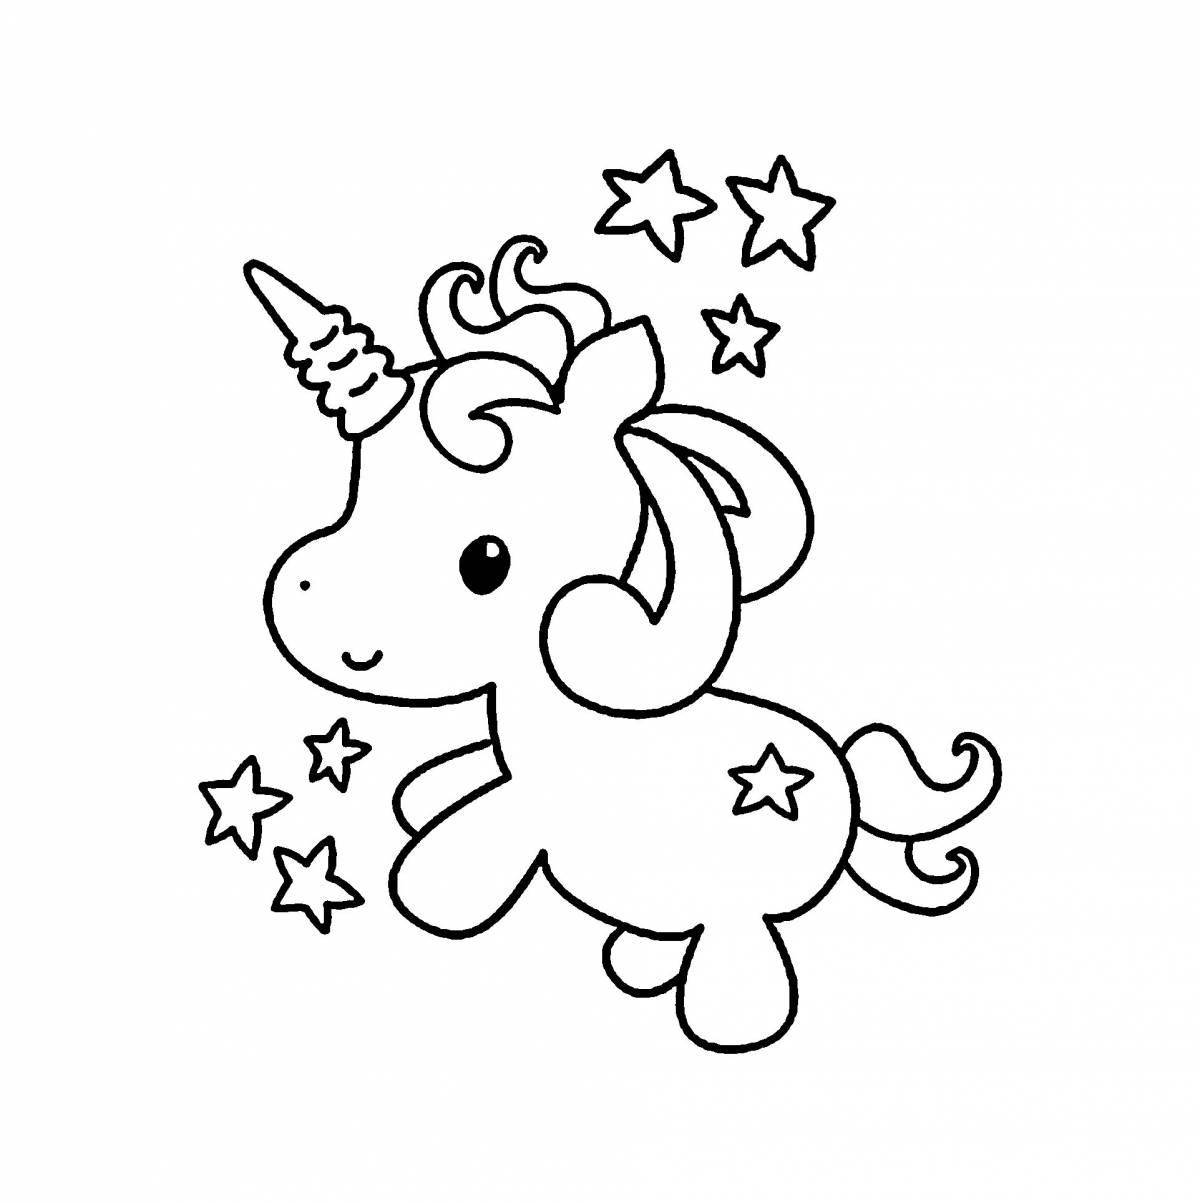 Adorable unicorn bunny coloring book